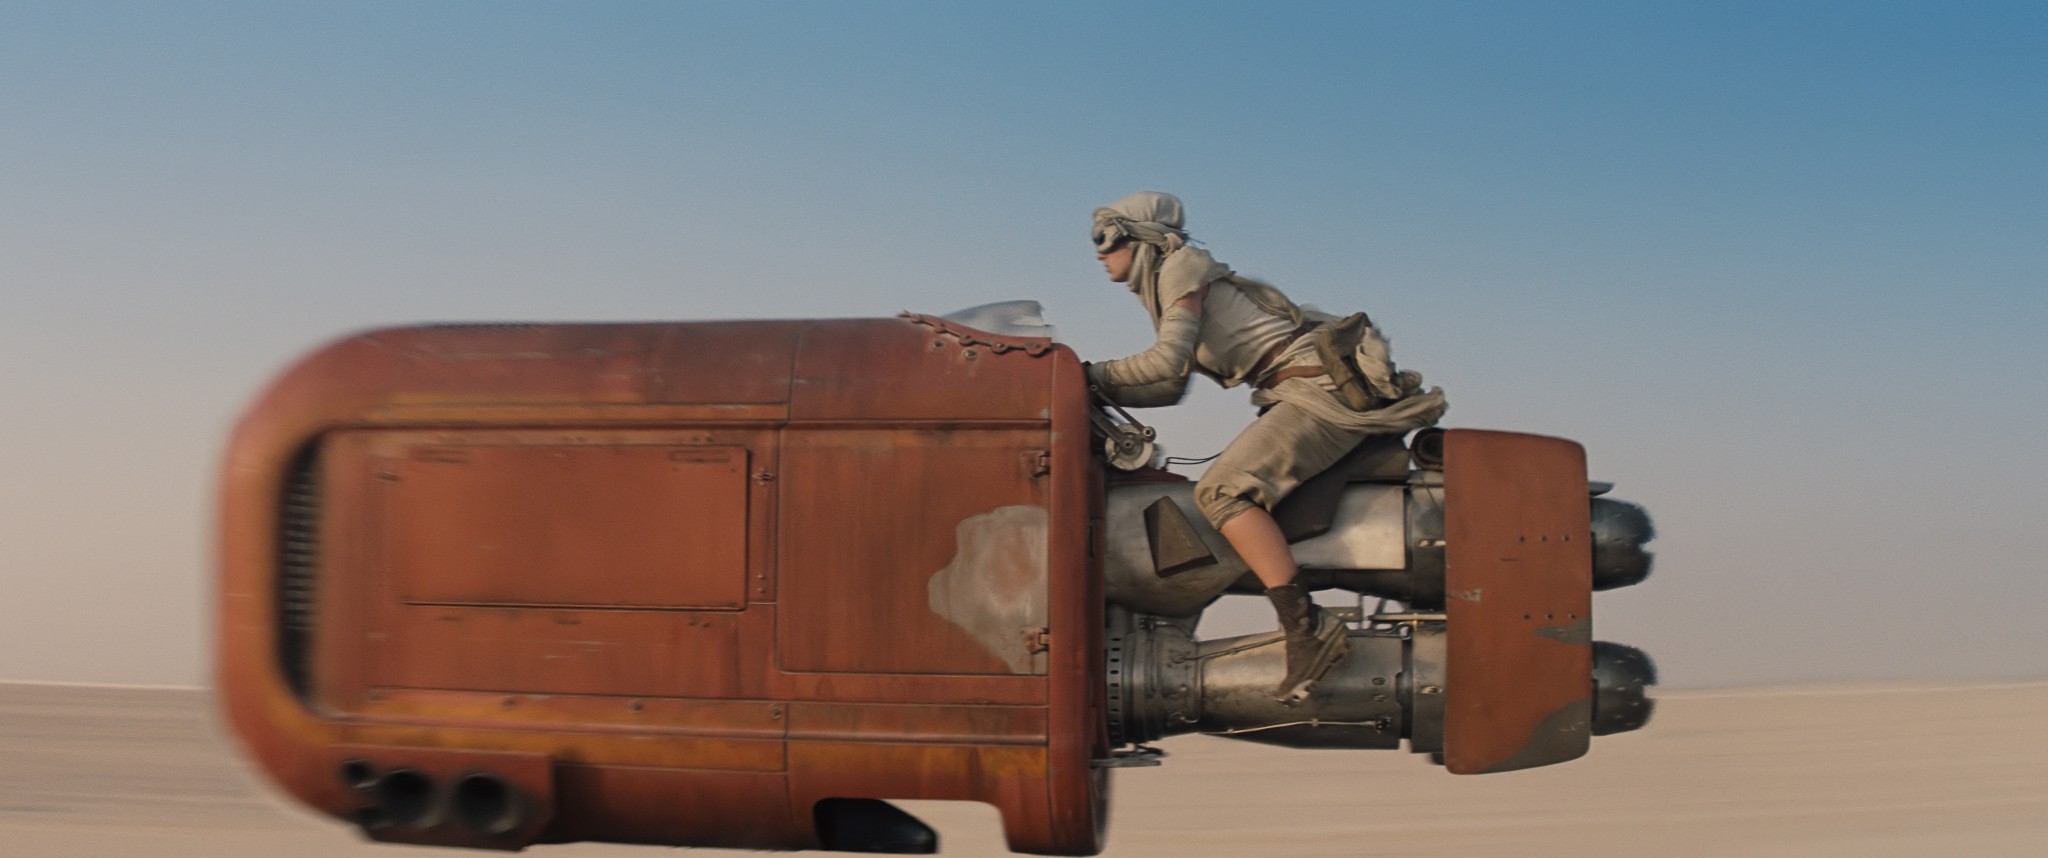 Disney anuncia el retraso de Star Wars Episodio VIII